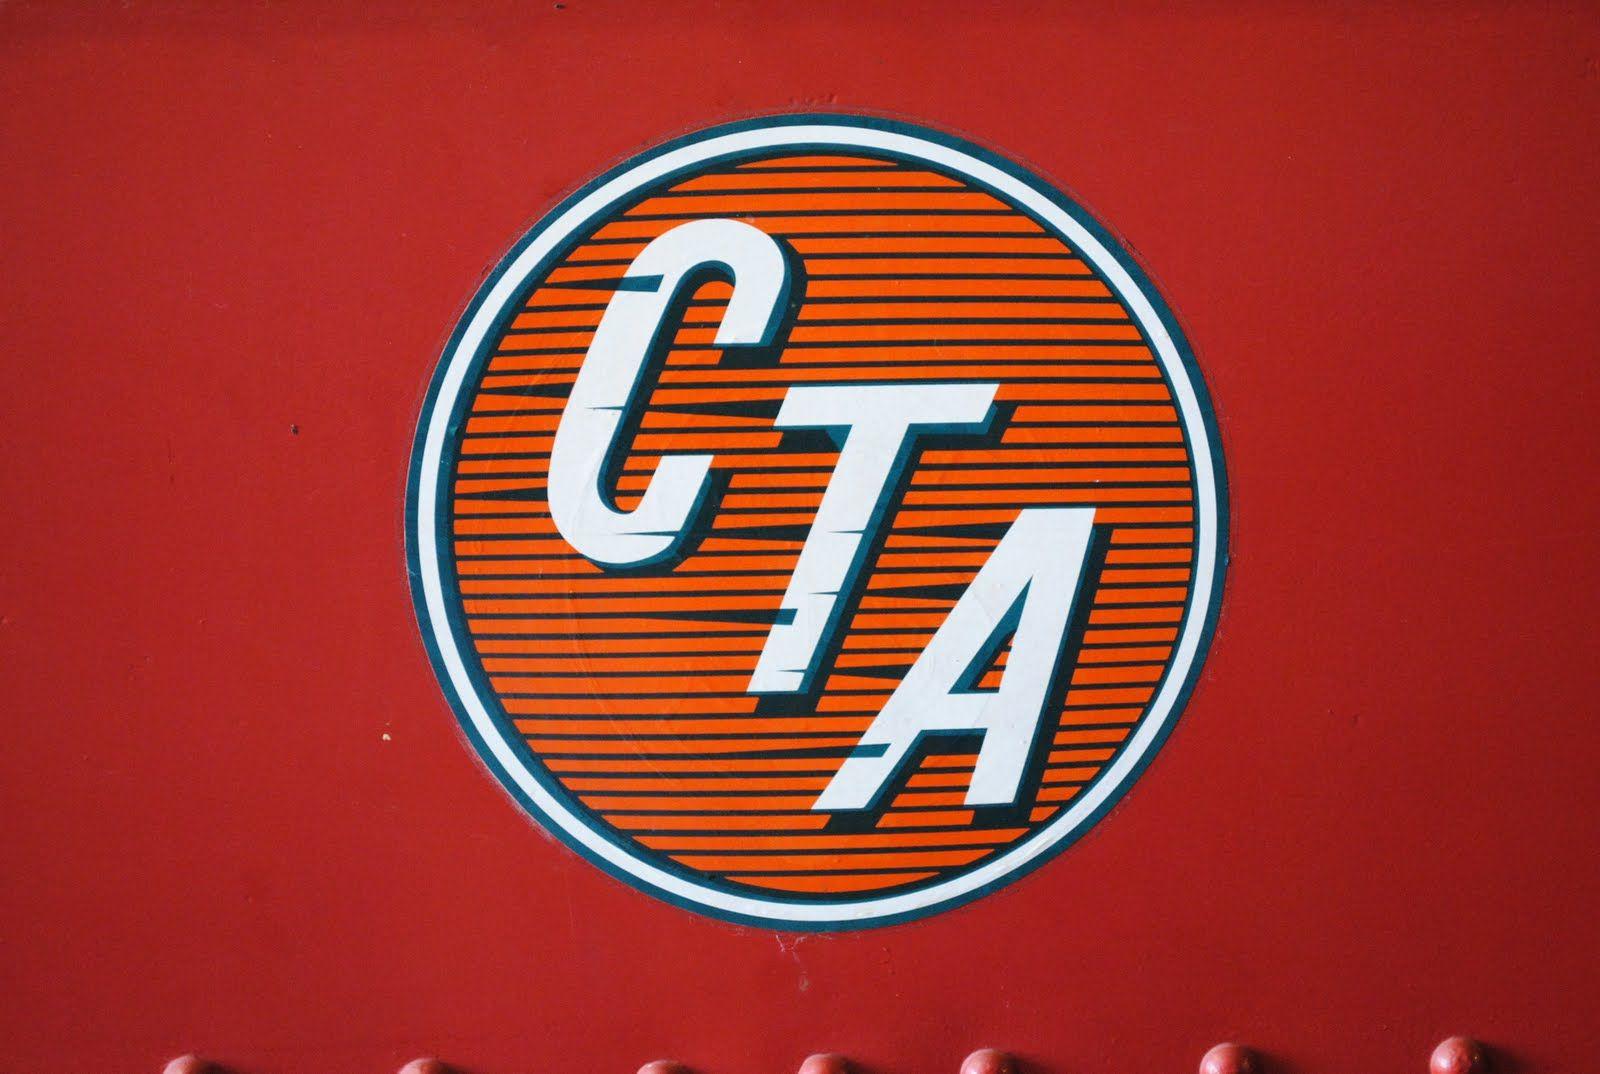 Chicago Transit Authority Logo - Old Chicago Transit Authority logo. Chicago transit authority